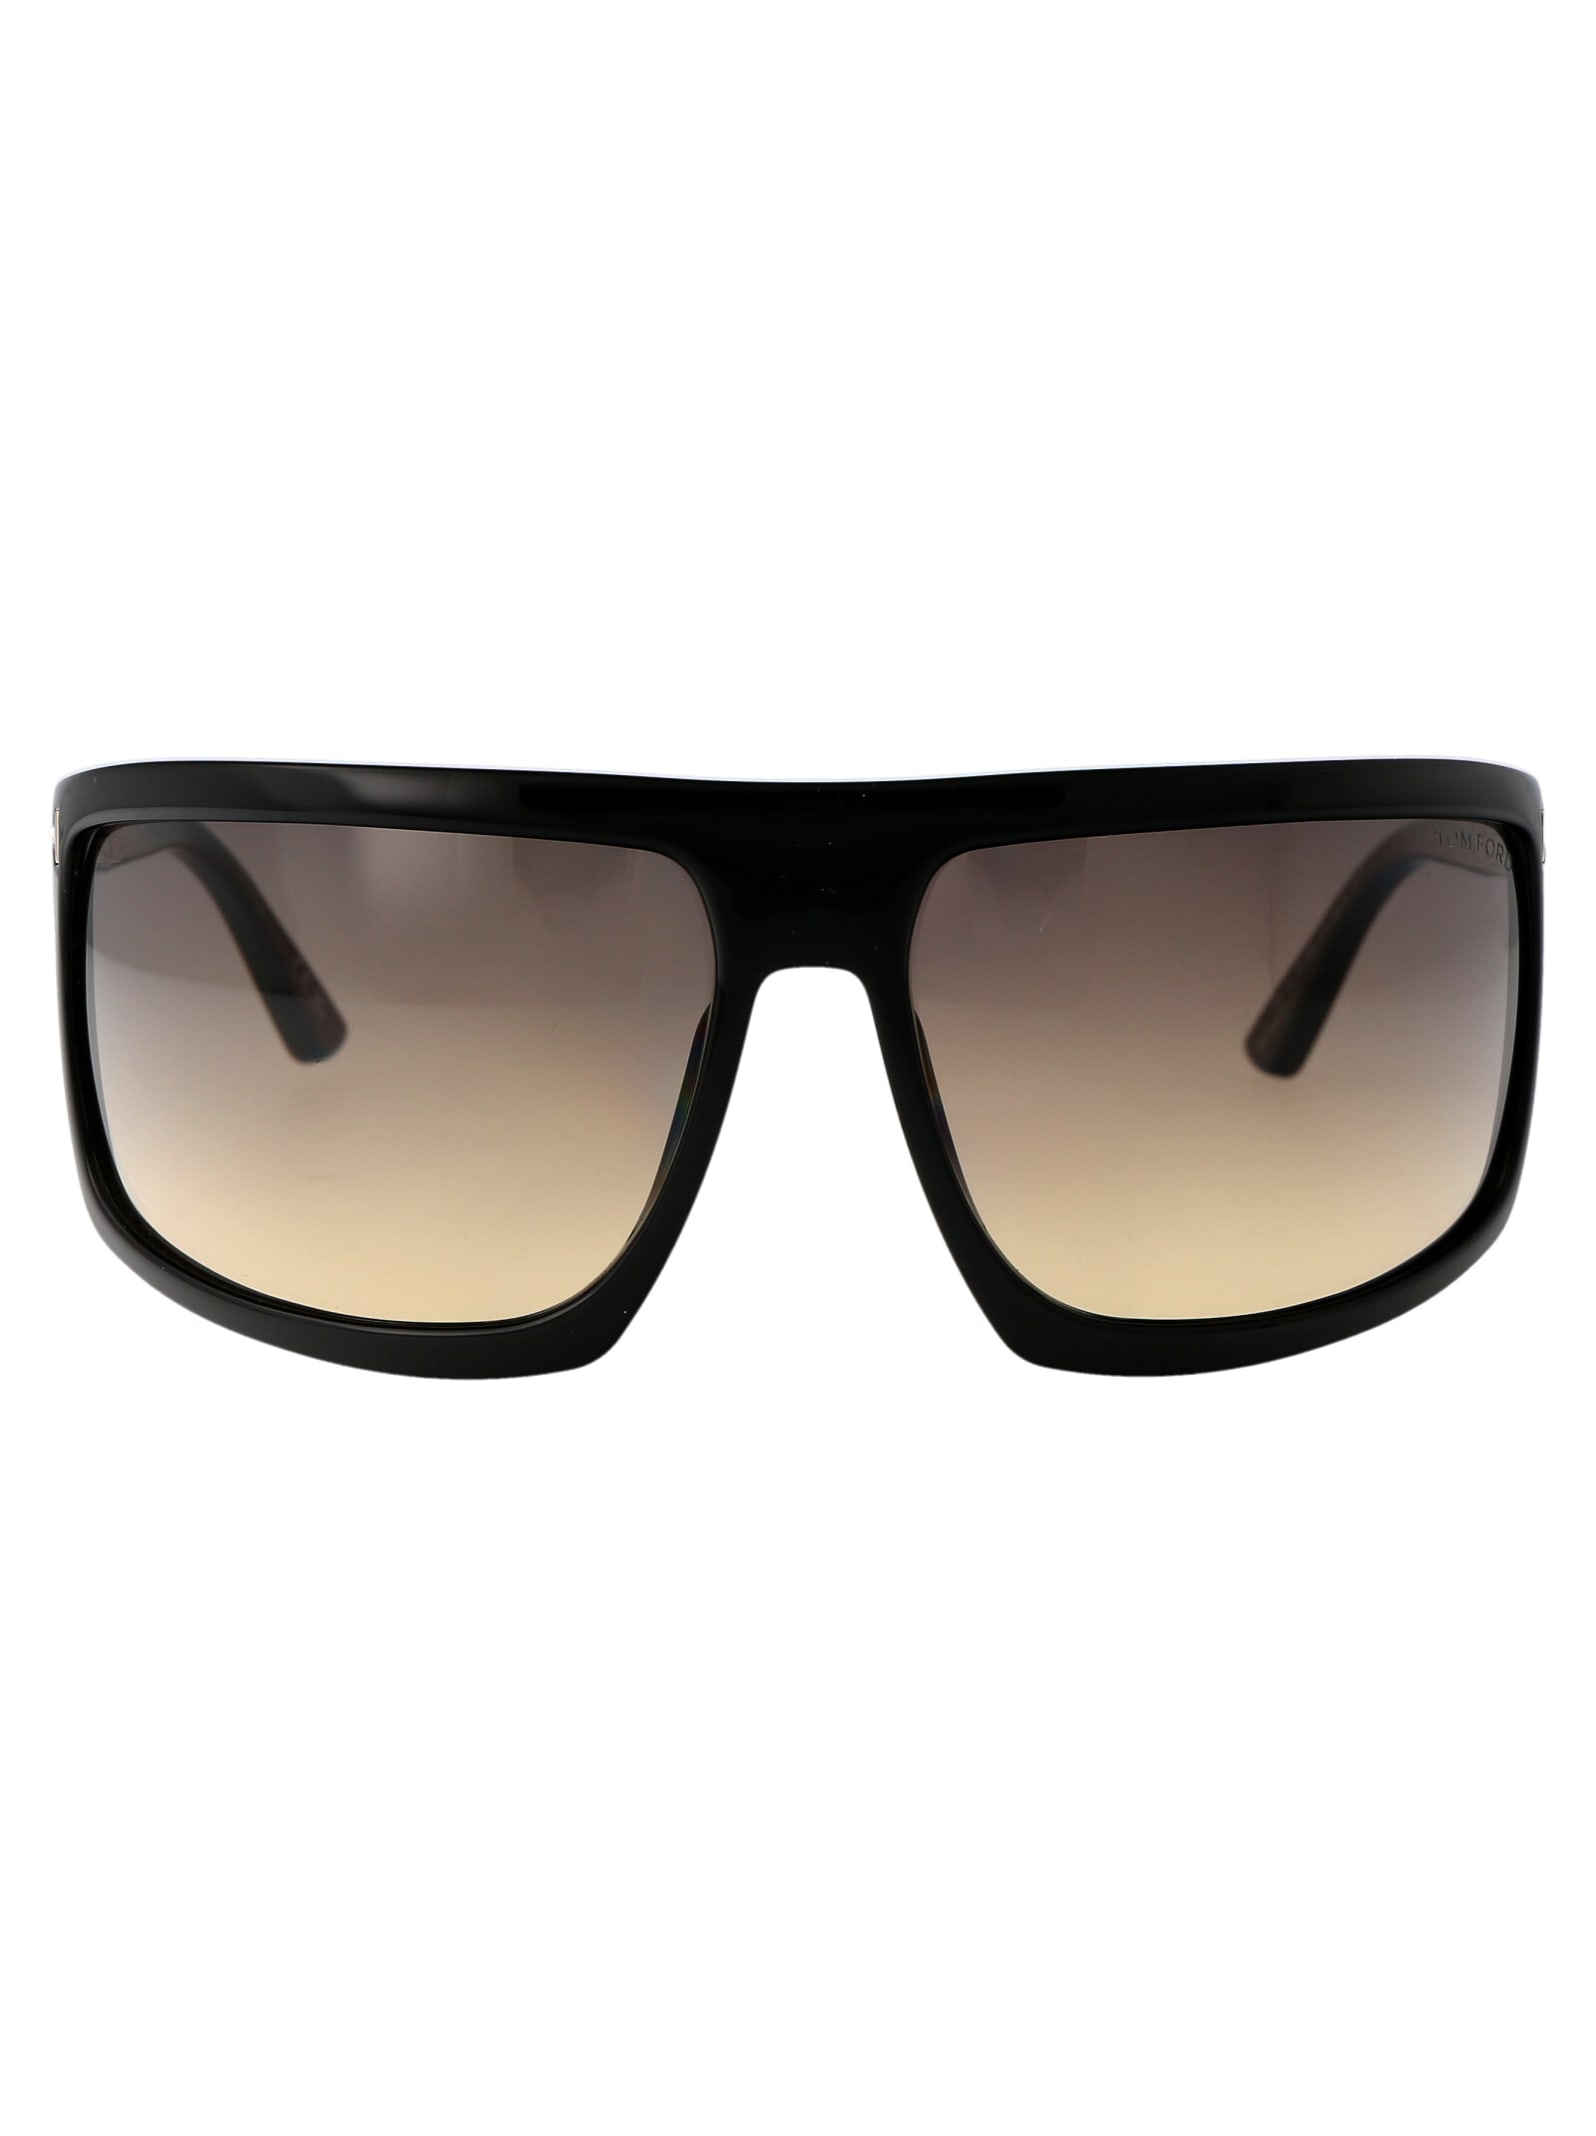 Clint-02 Sunglasses